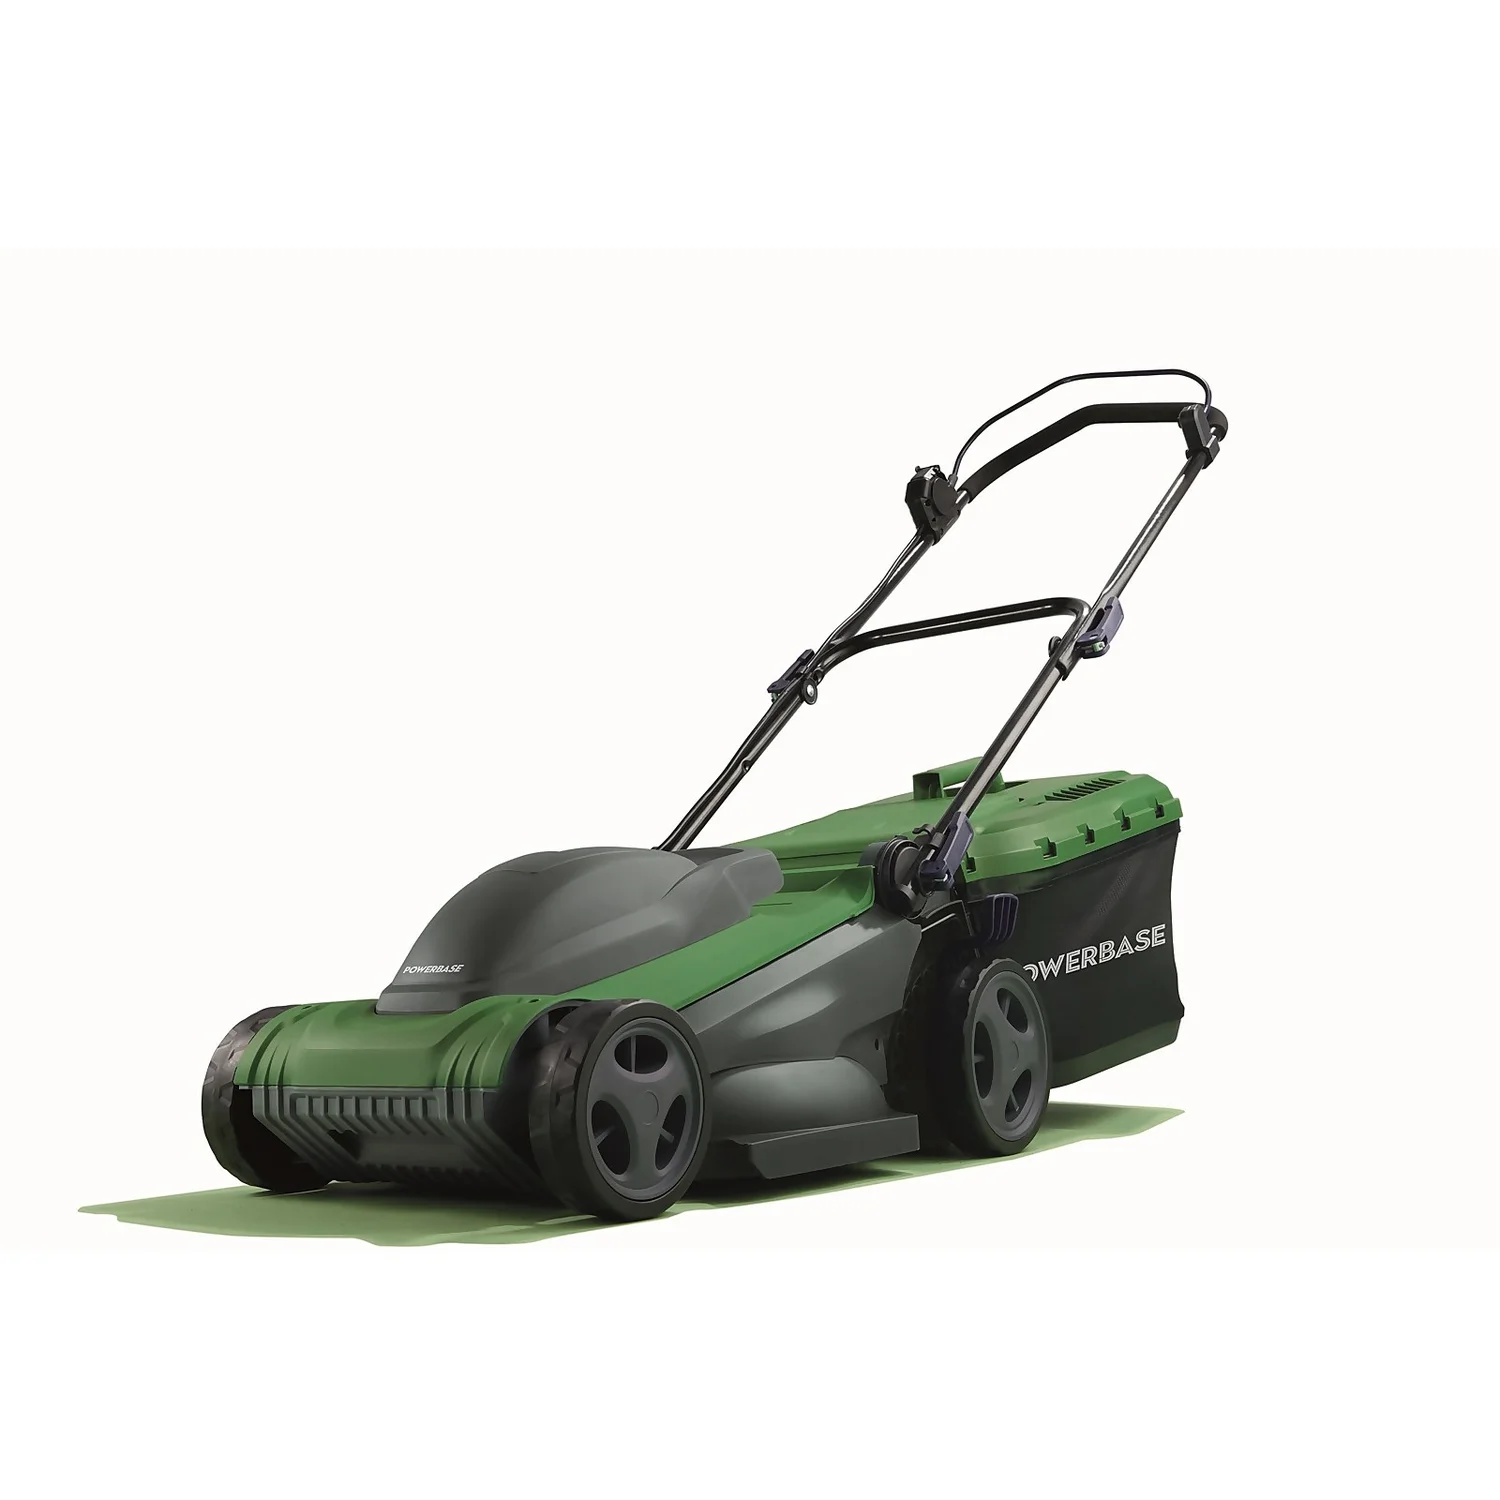 Image of Save &pound20: Powerbase 1600W Electric Lawn Mower - 37cm